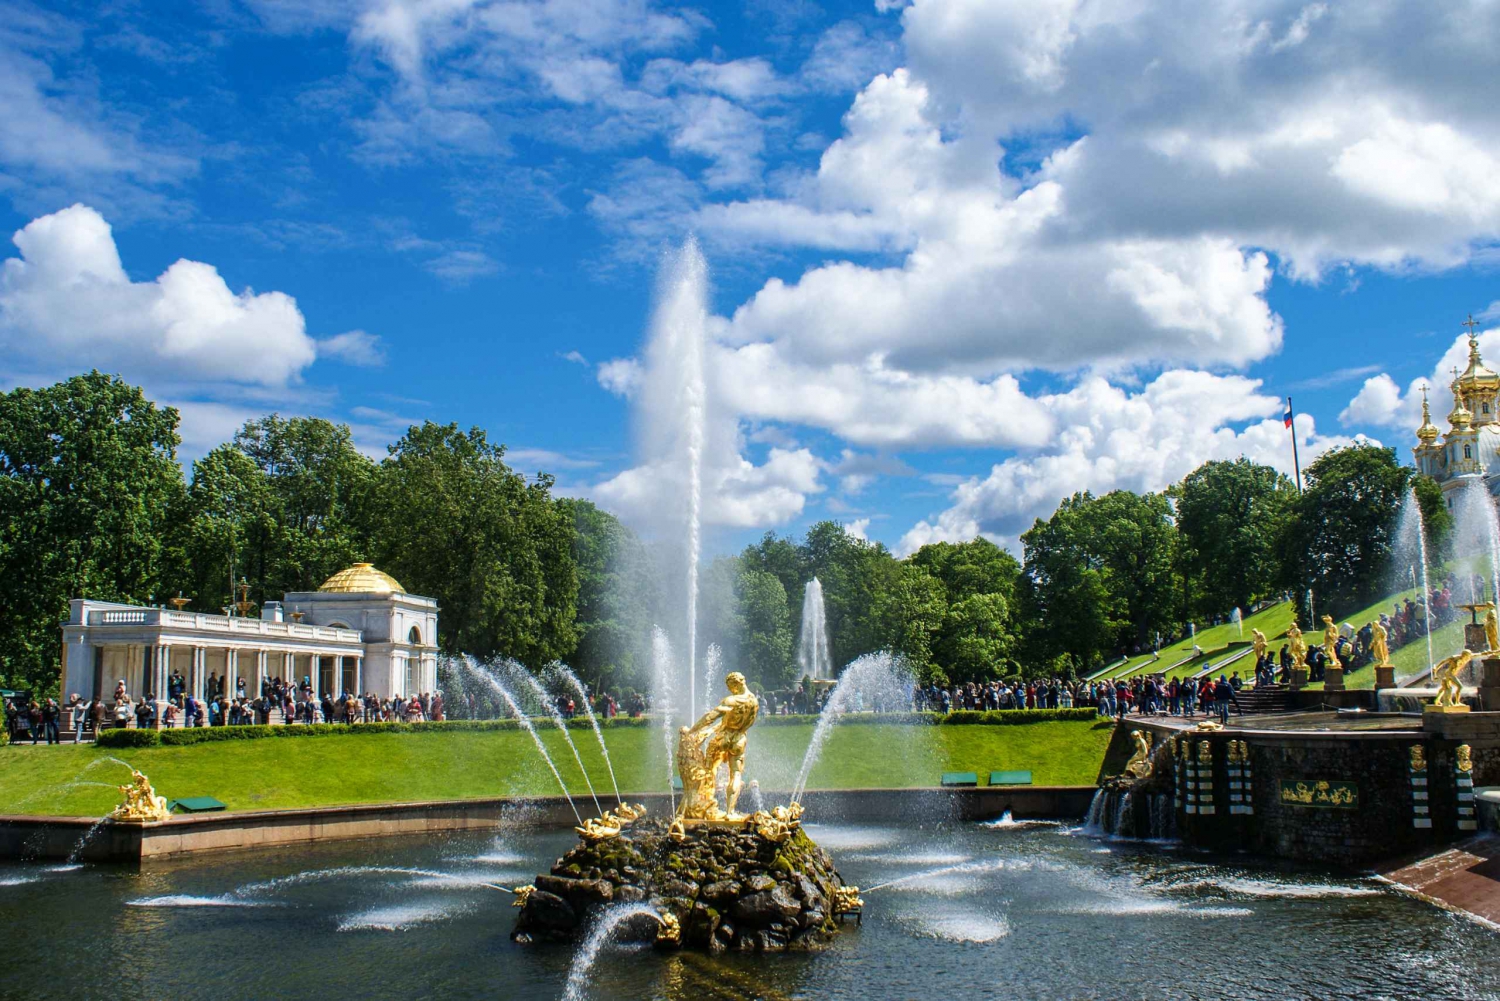 St. Petersburg: Peterhof Gardens by Hydrofoil